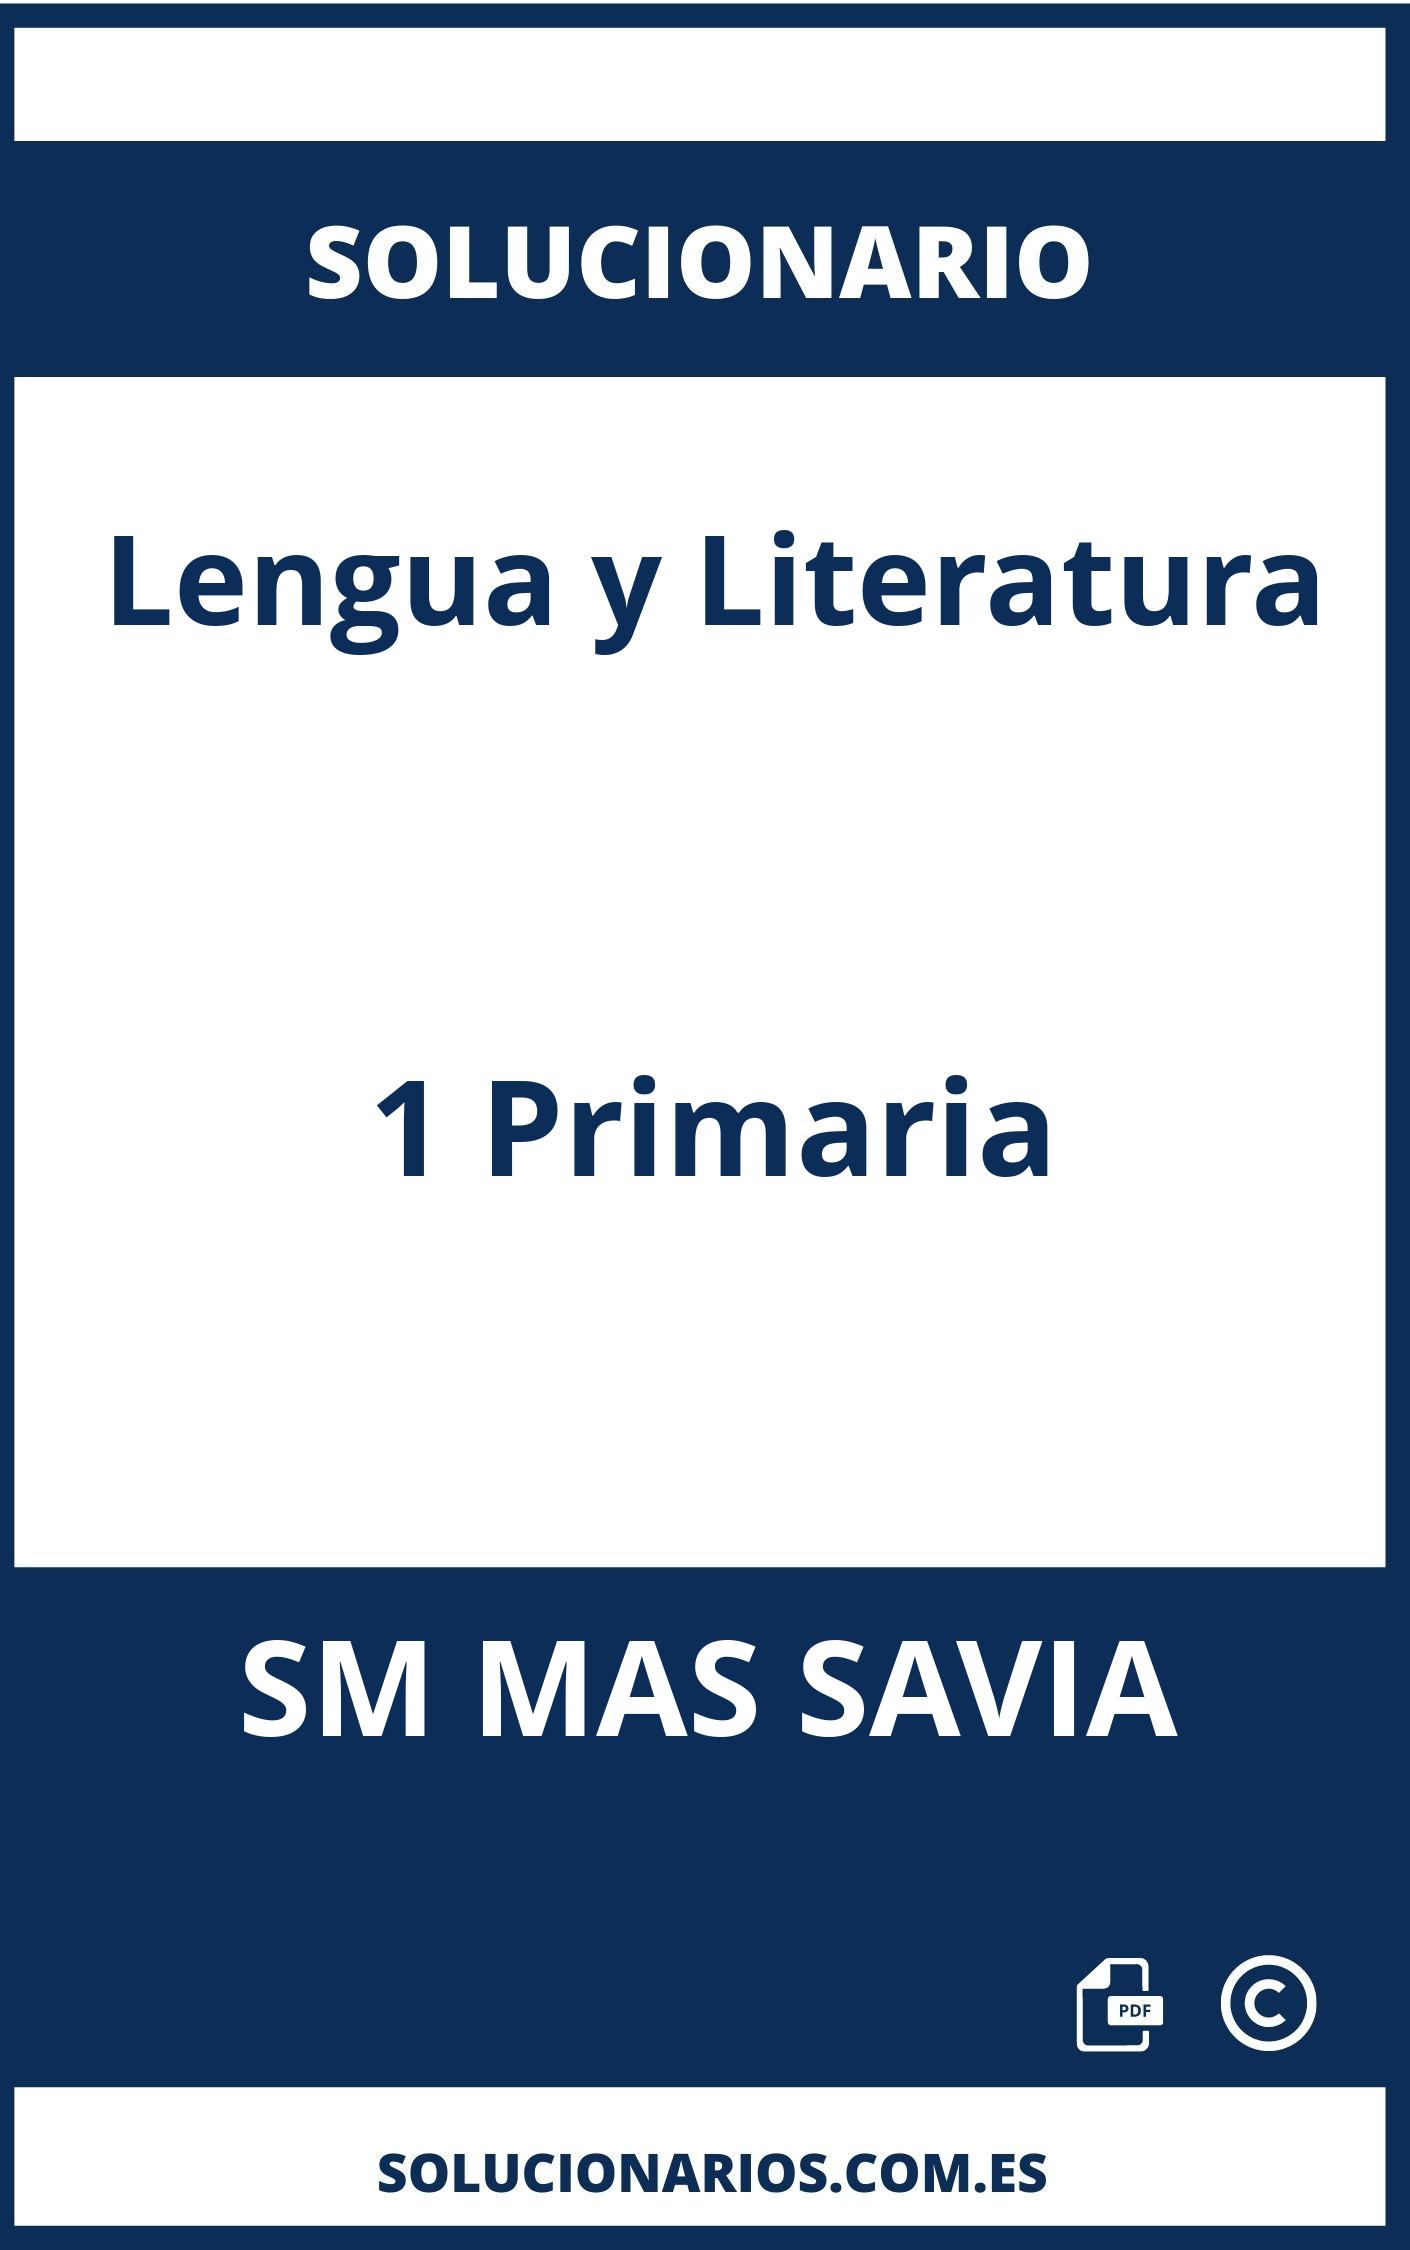 Solucionario Lengua y Literatura 1 Primaria SM MAS SAVIA